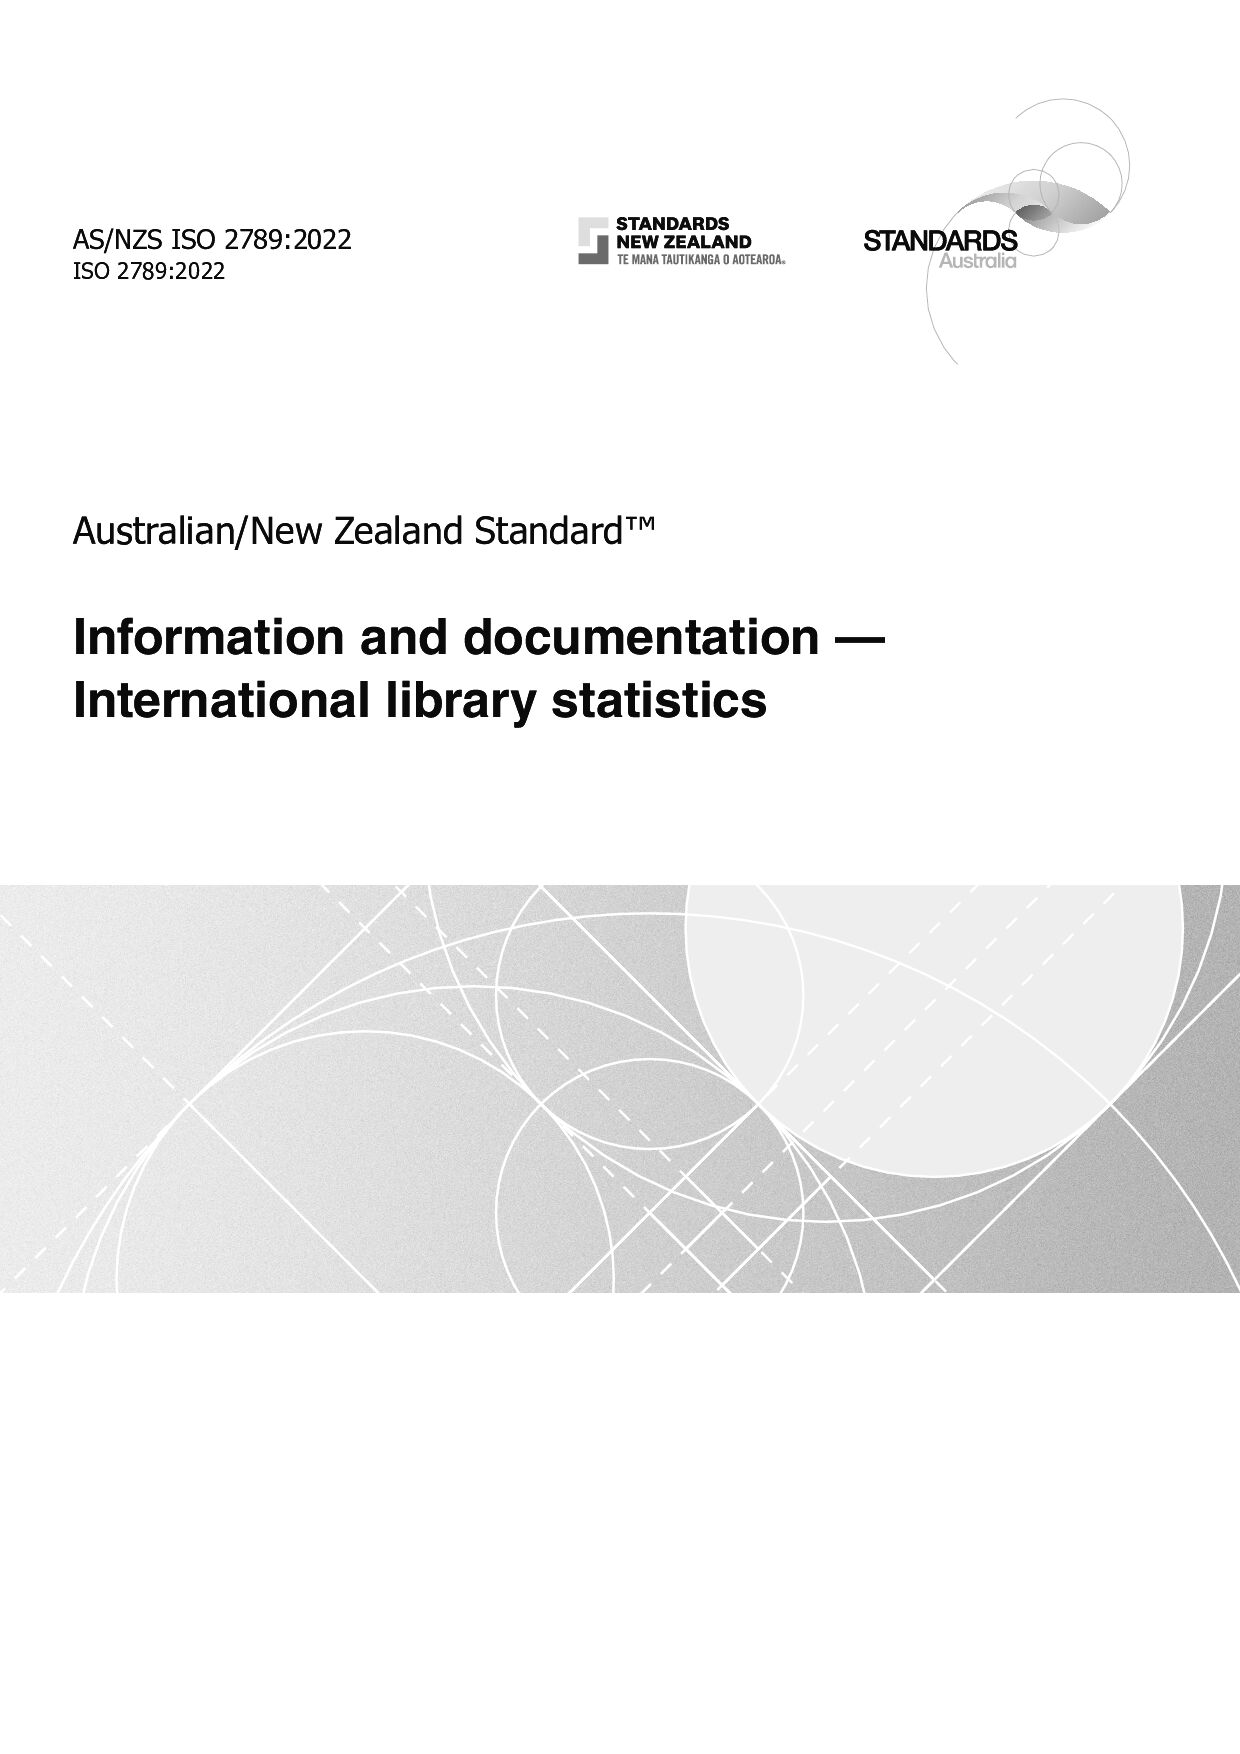 AS/NZS ISO 2789:2022封面图